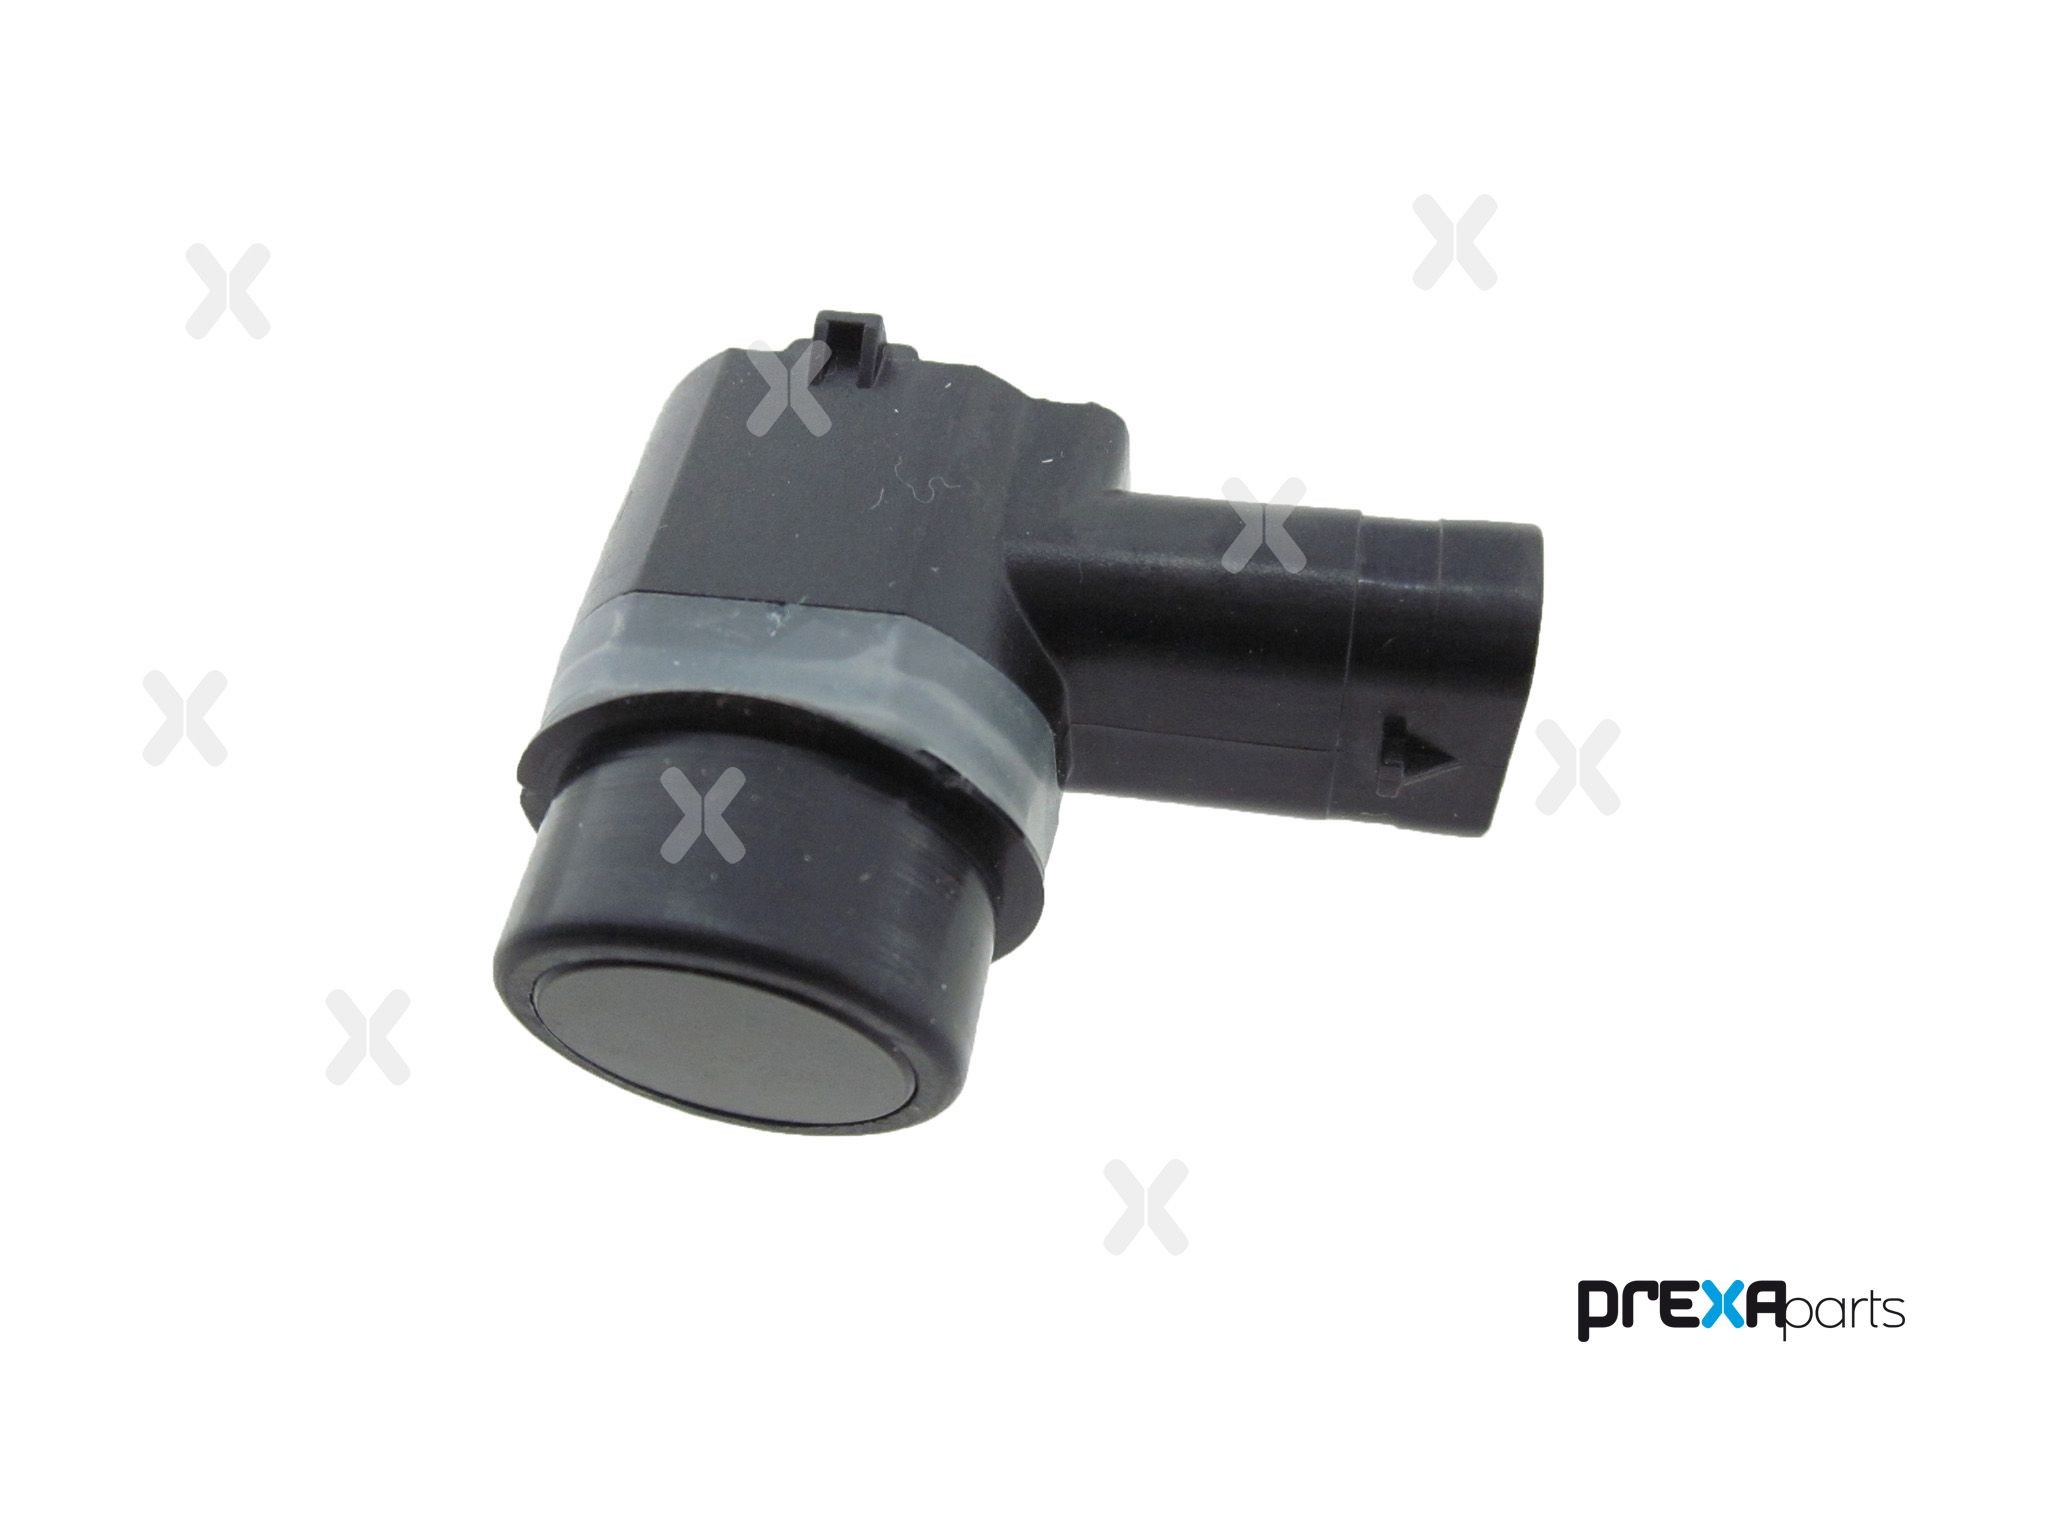 PREXAparts P103002 Parking sensor EM2T15C868BA